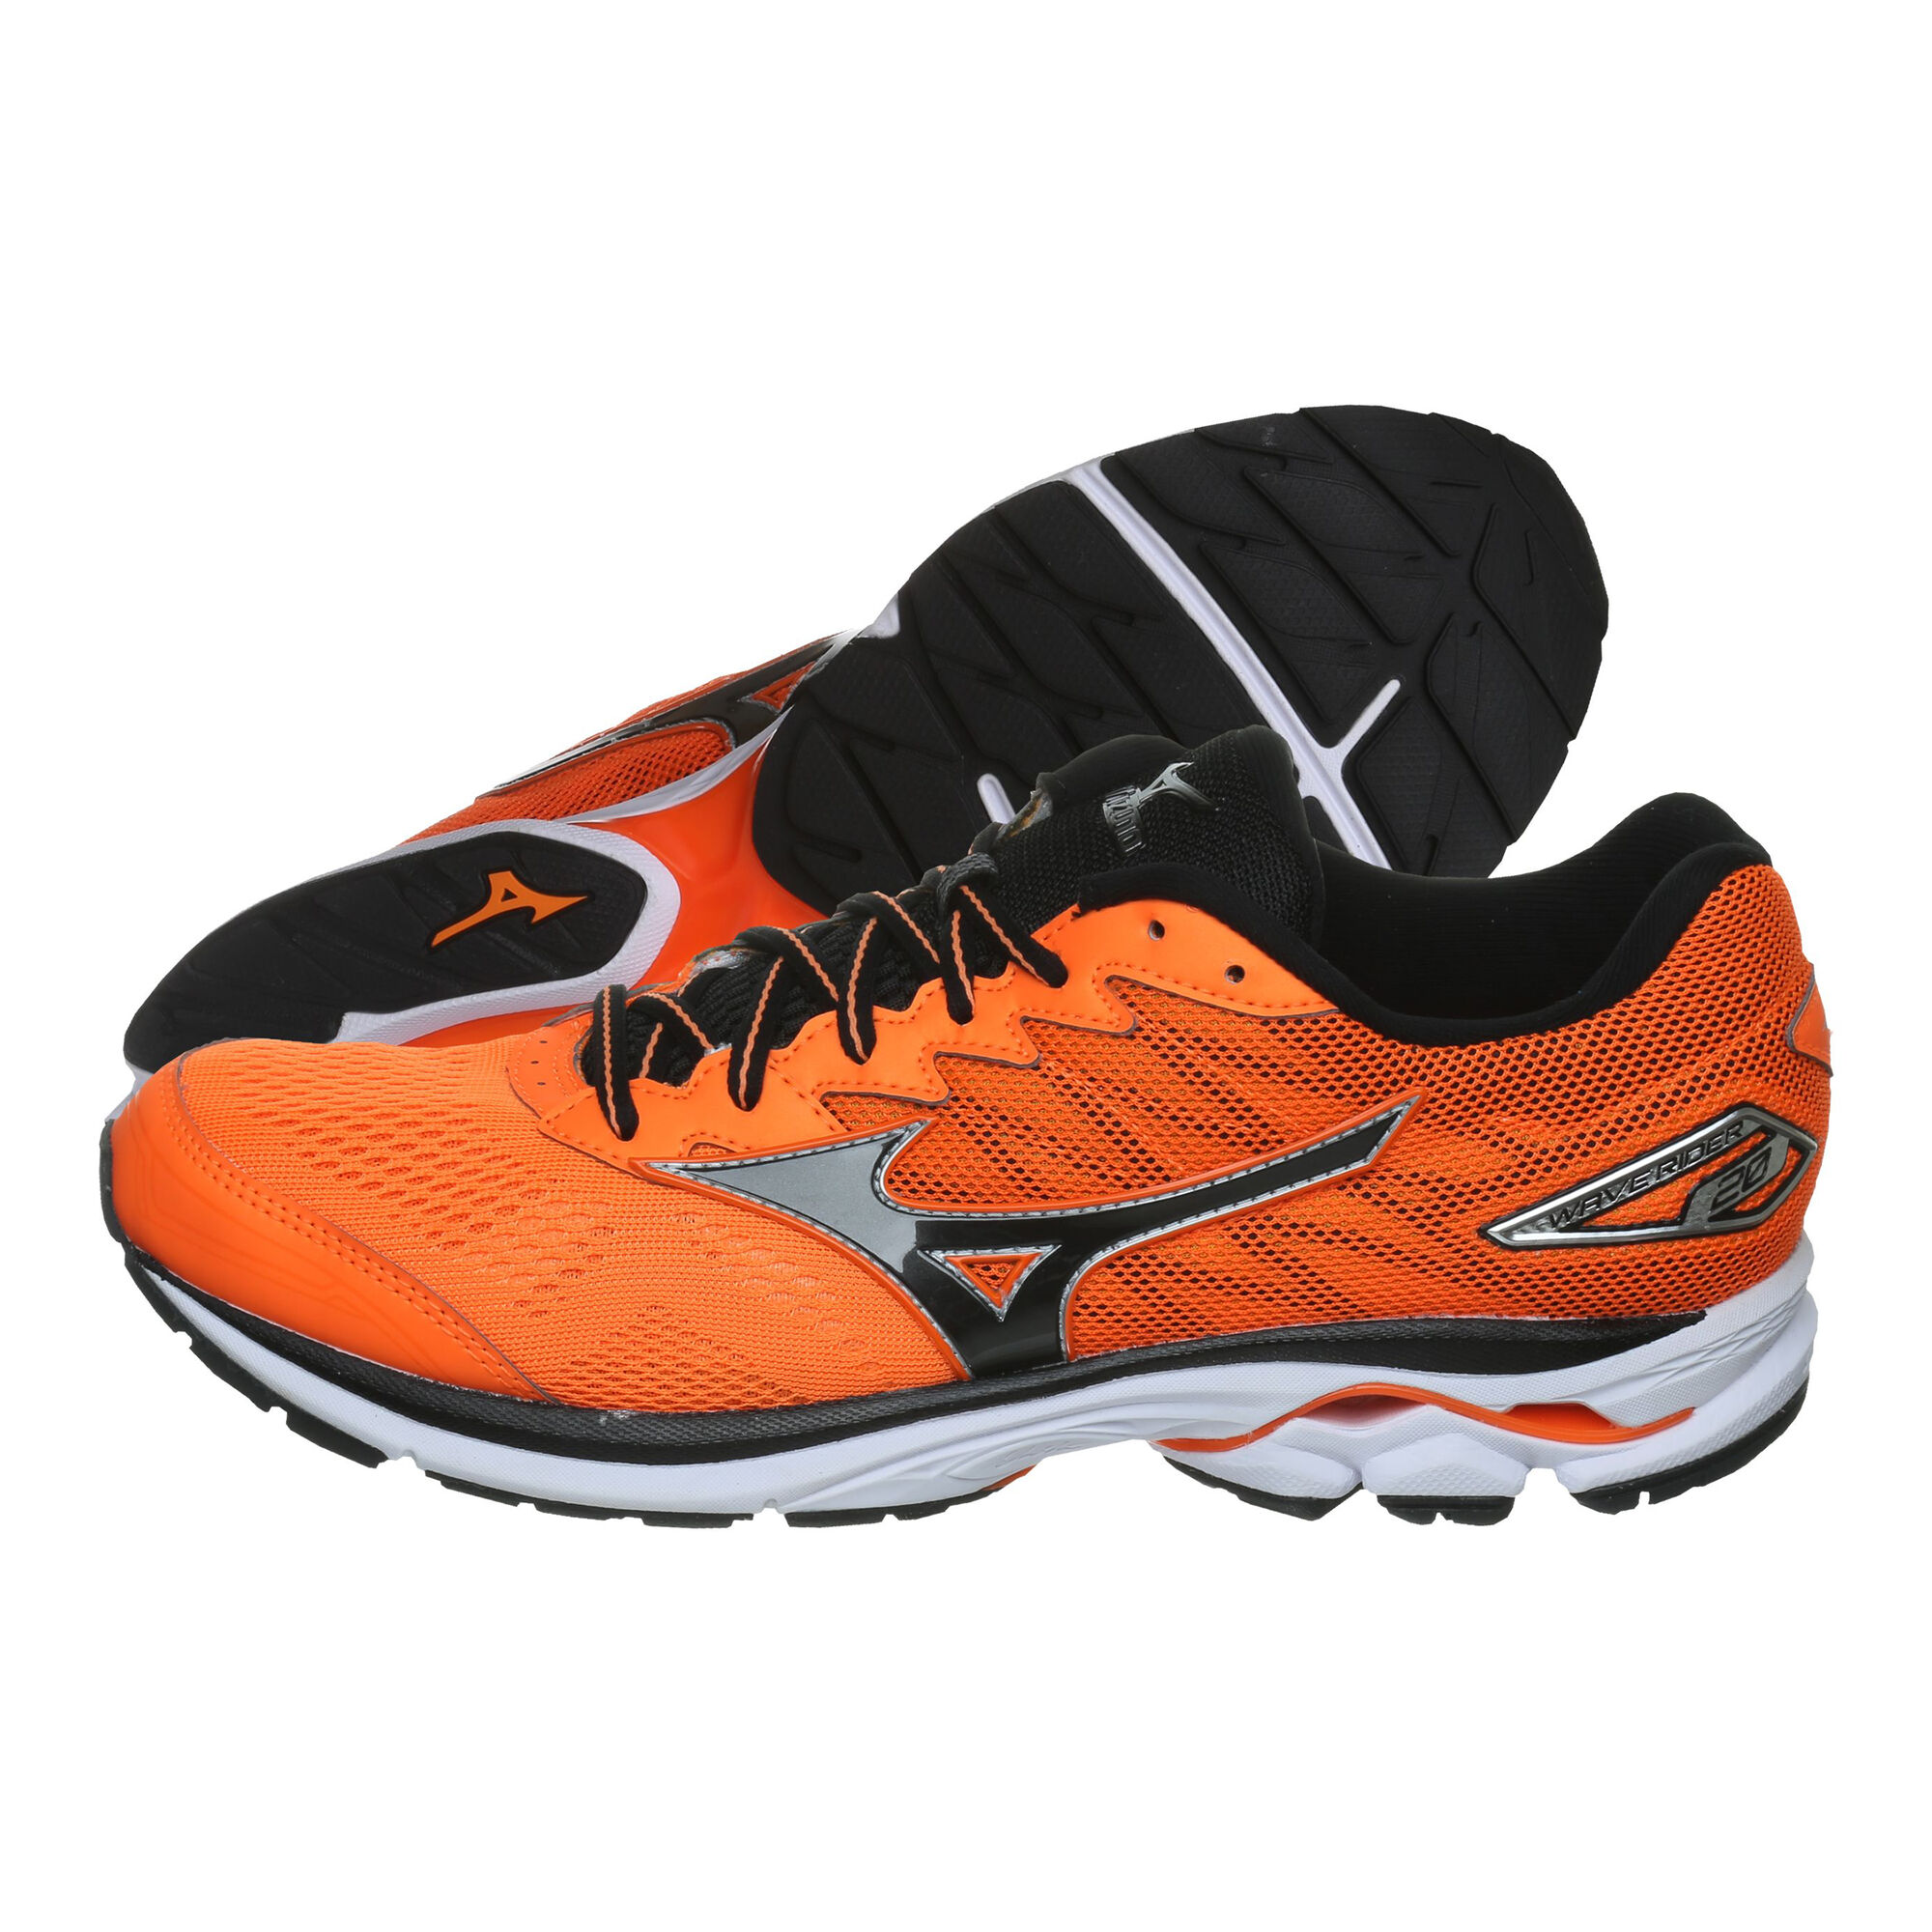 Buy Mizuno Wave Rider Neutral Running Shoe Men Orange Black Online Jogging Point